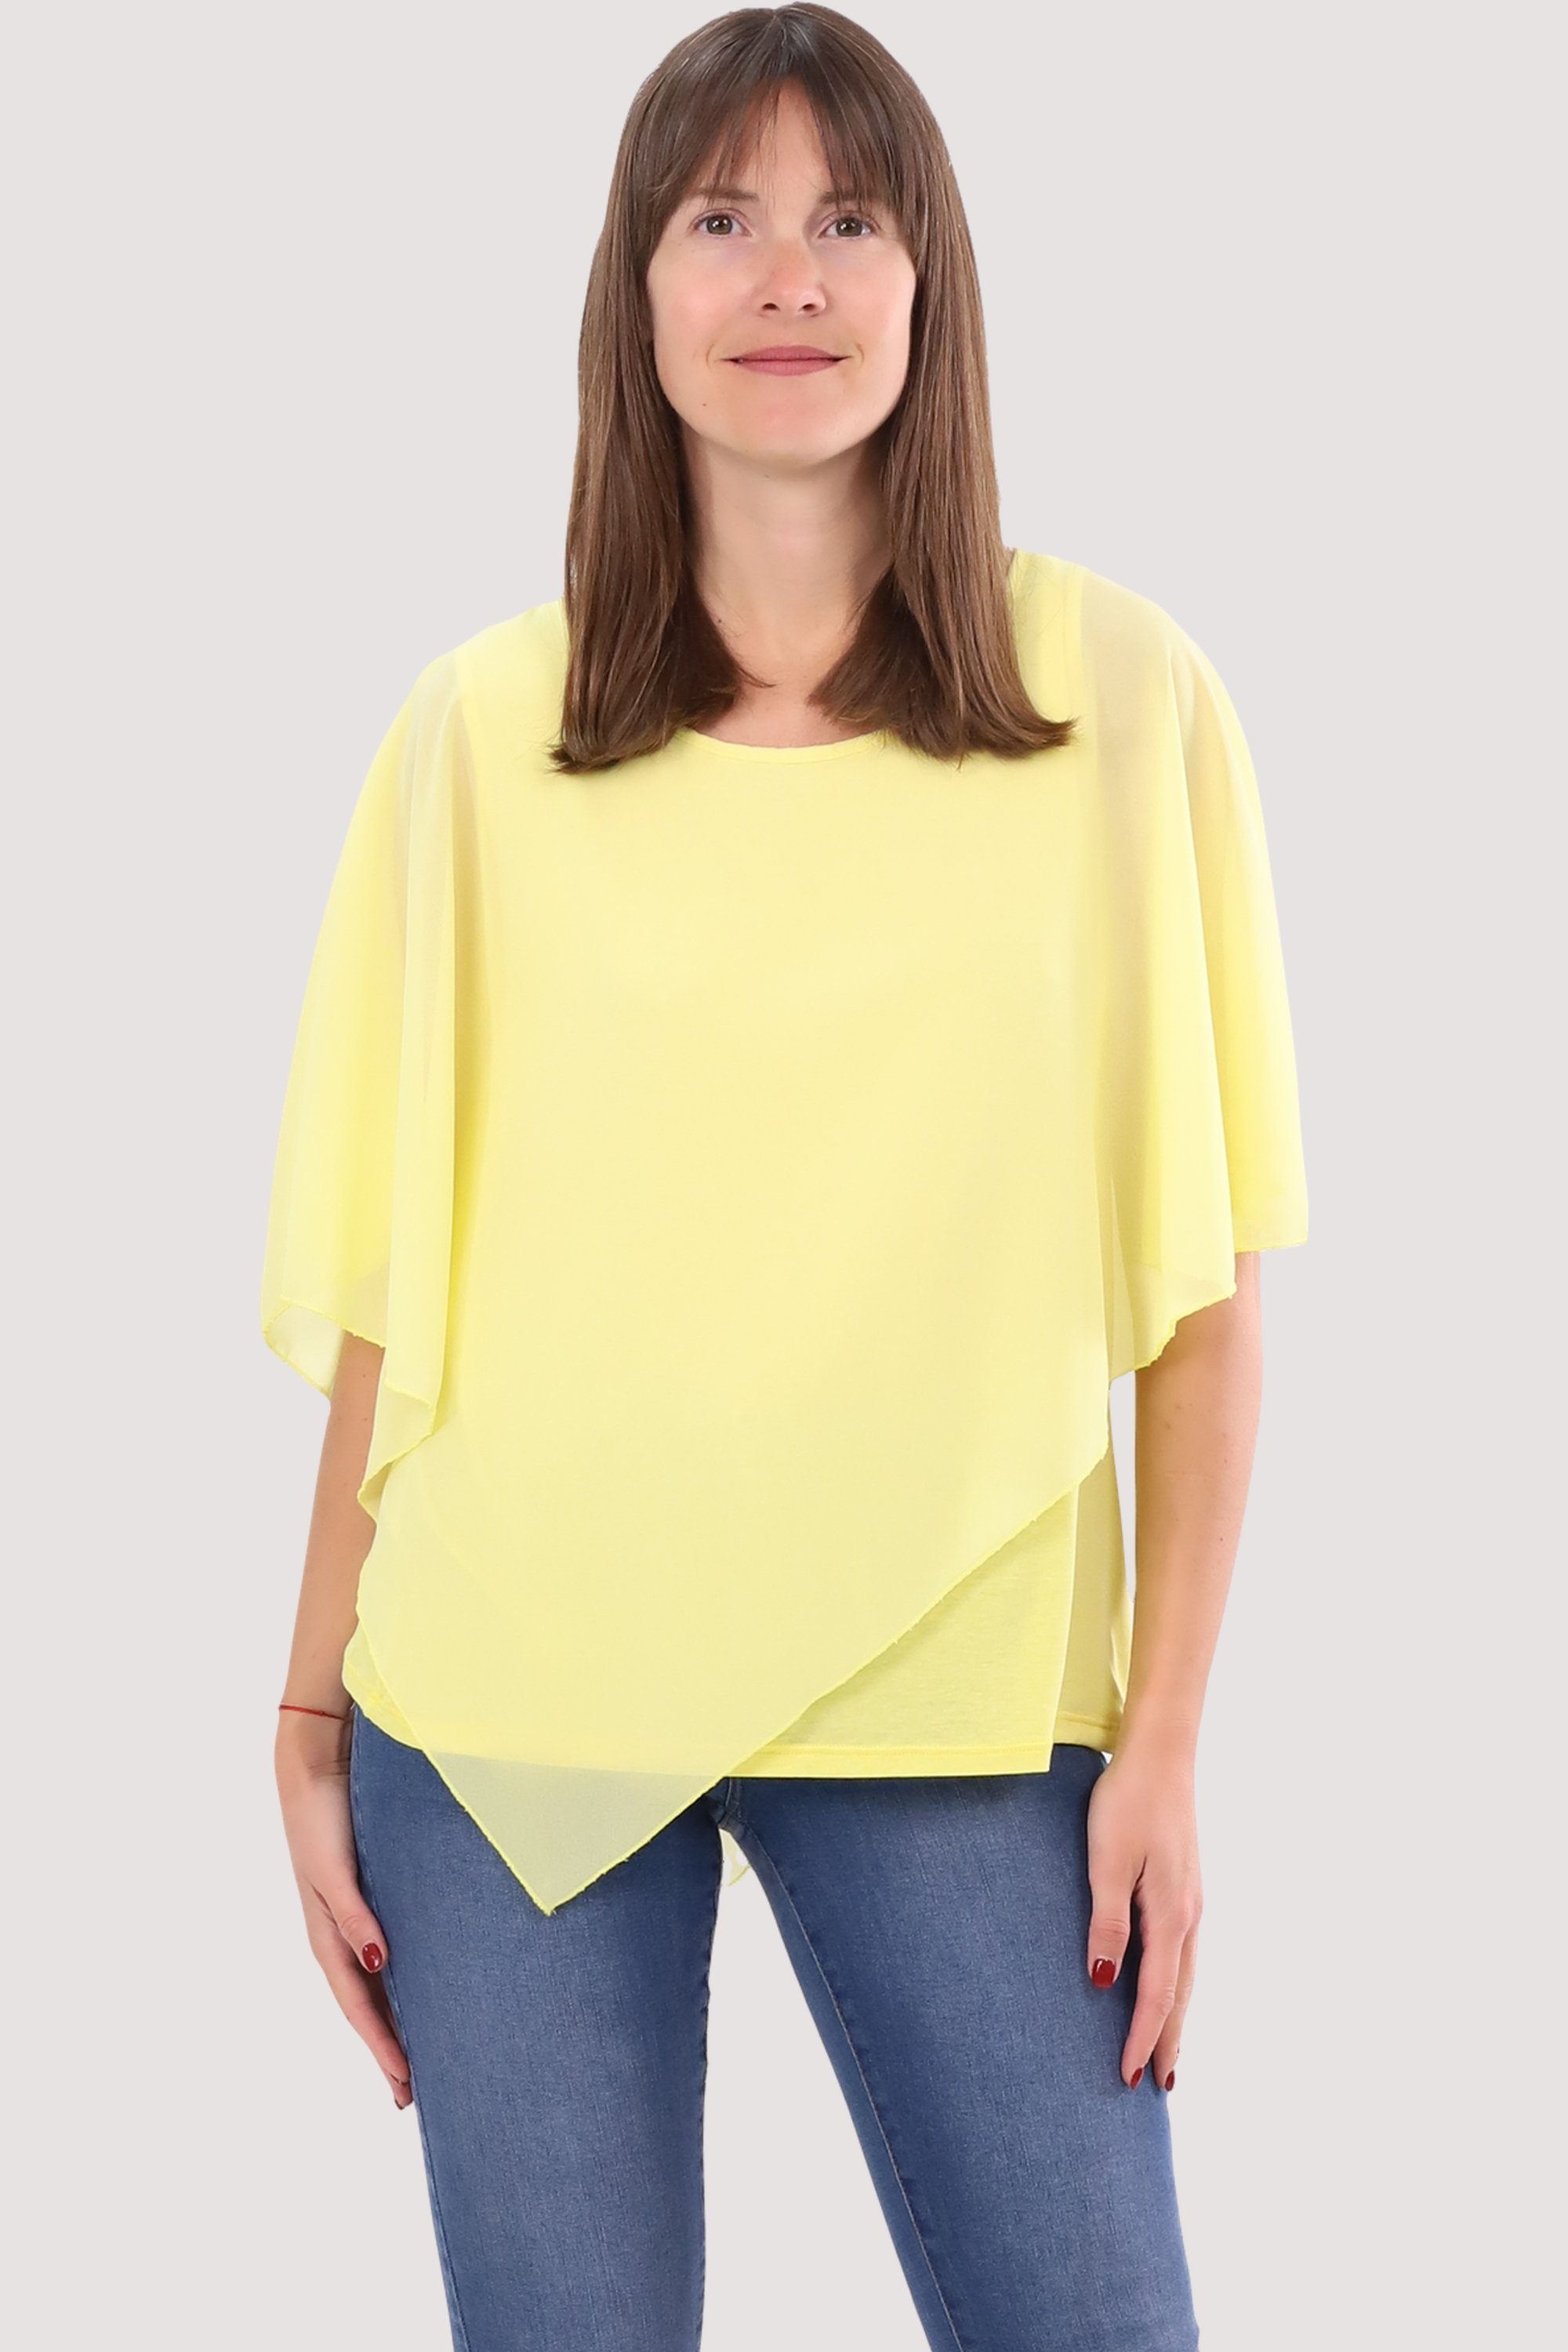 10732 geschnitten Chiffonbluse Schlupfbluse malito fashion Einheitsgröße asymmetrisch more than gelb Blusenshirt